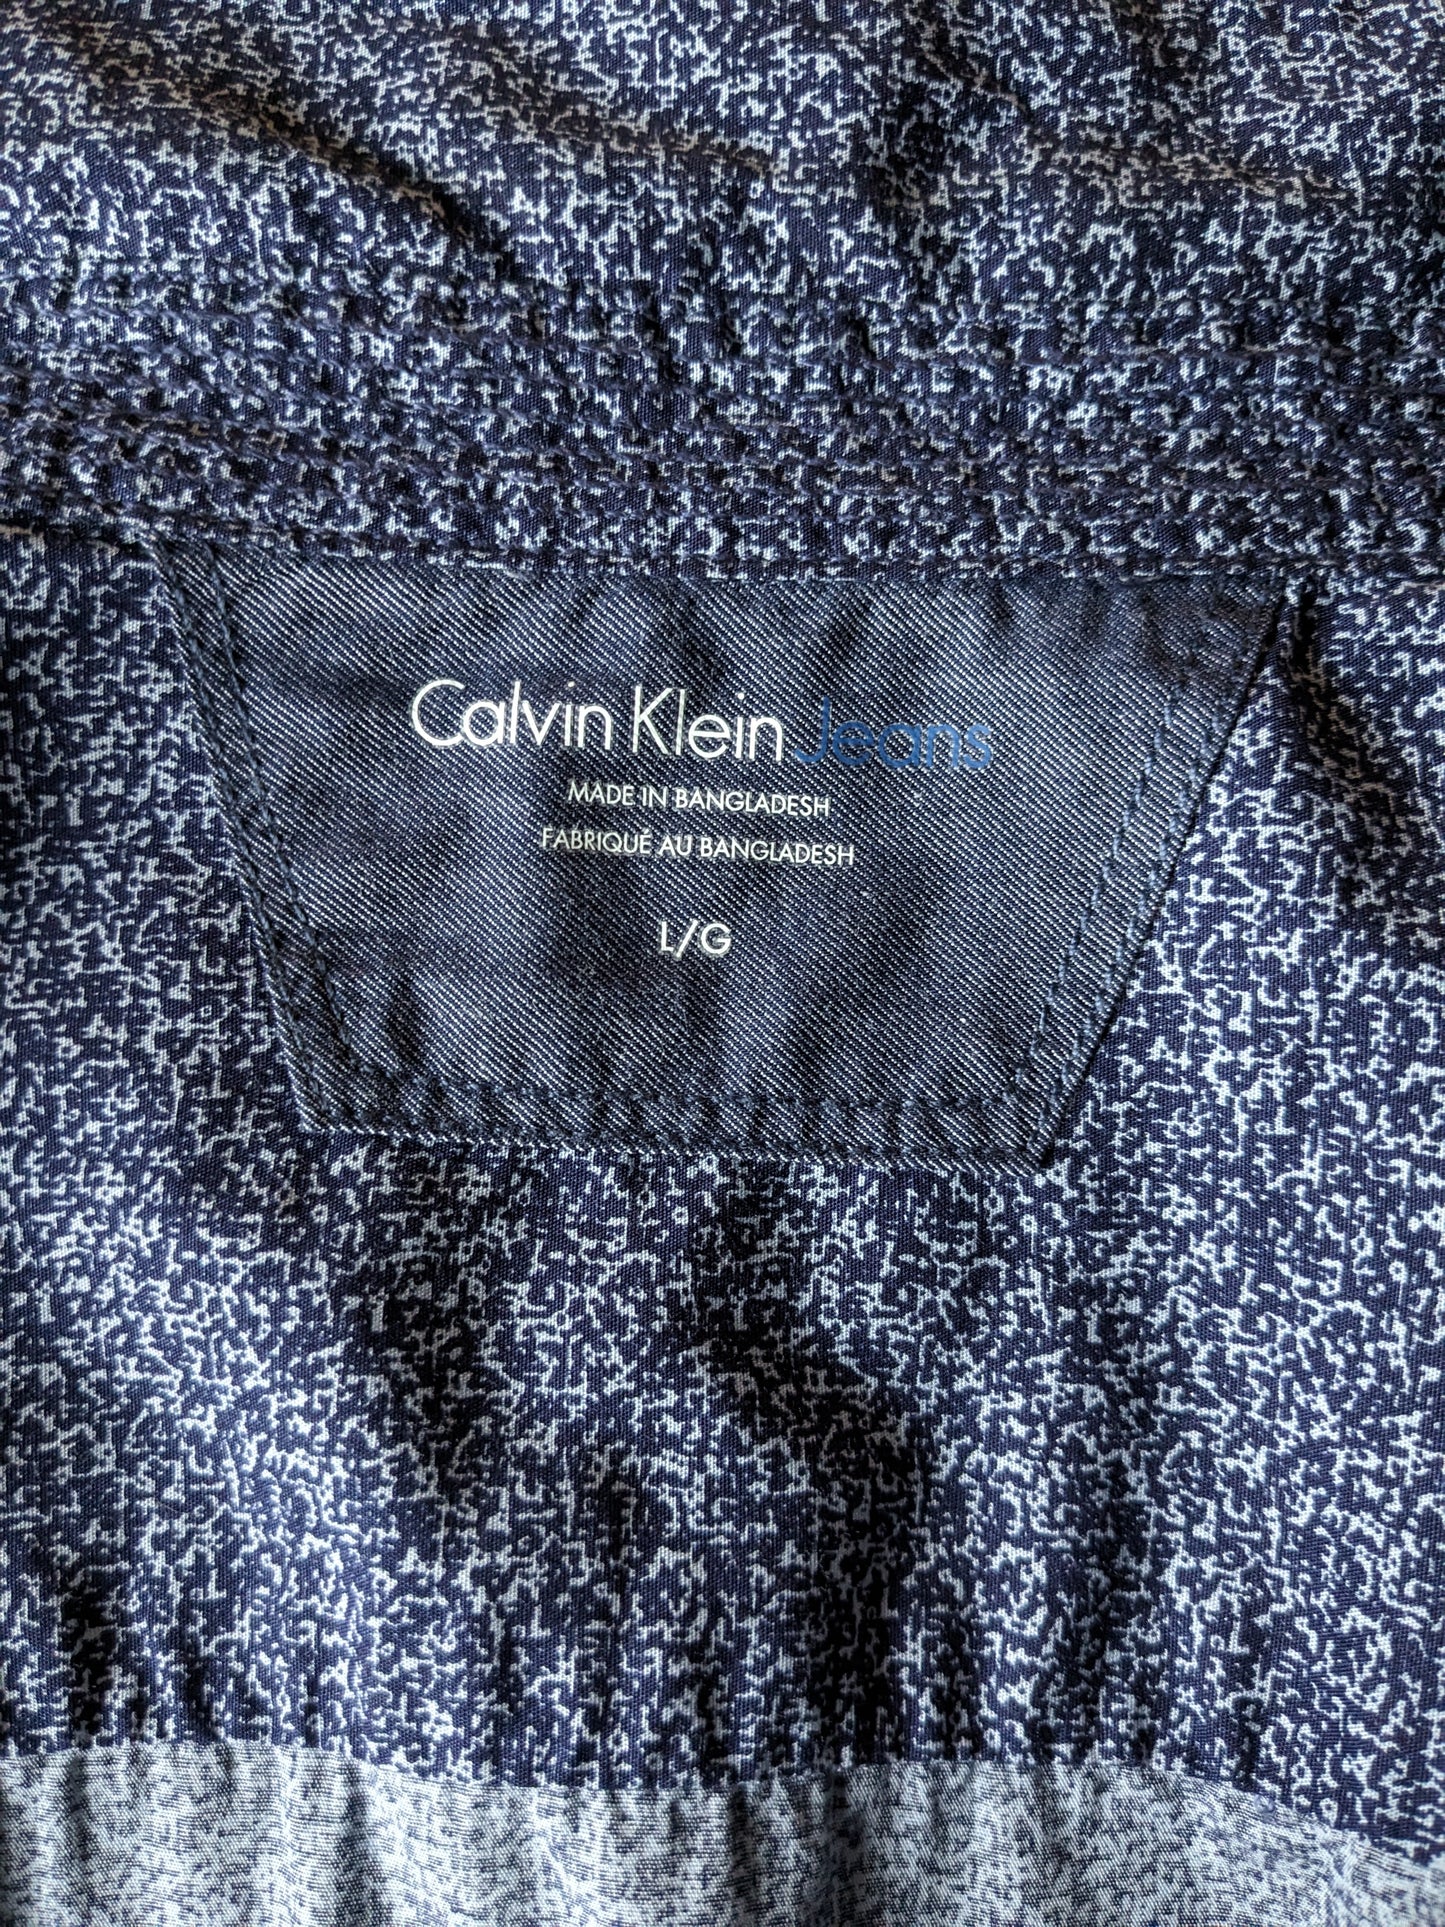 Camisa de Calvin Klein. Plano. Talla L.